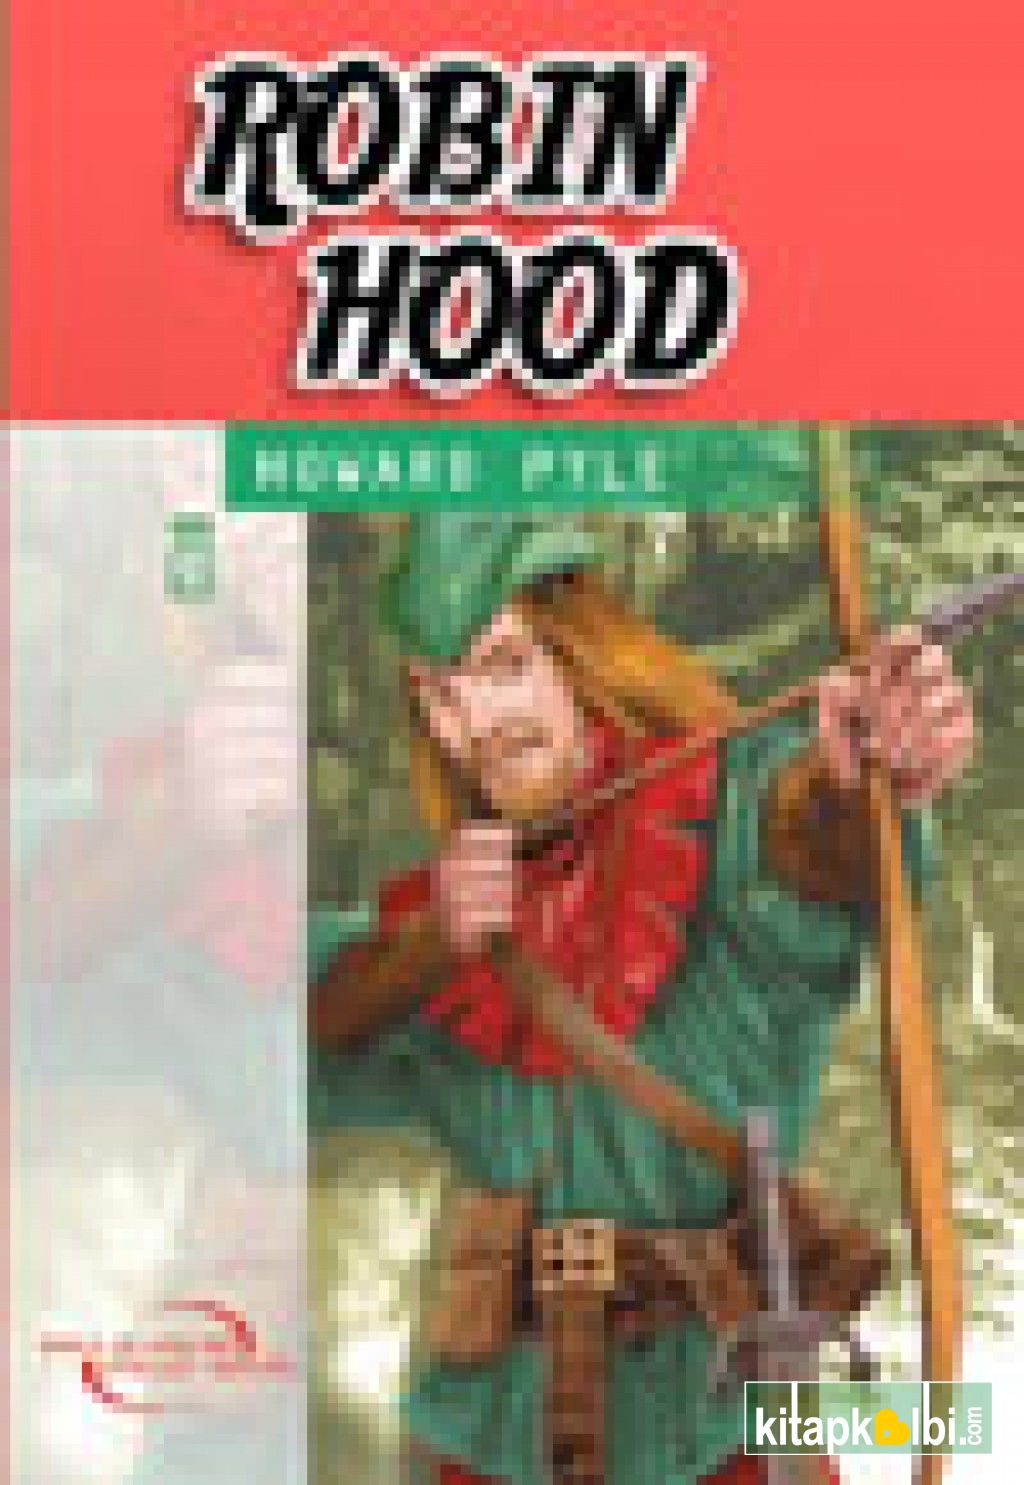 Robin Hood İlk Gençlik Klasikleri